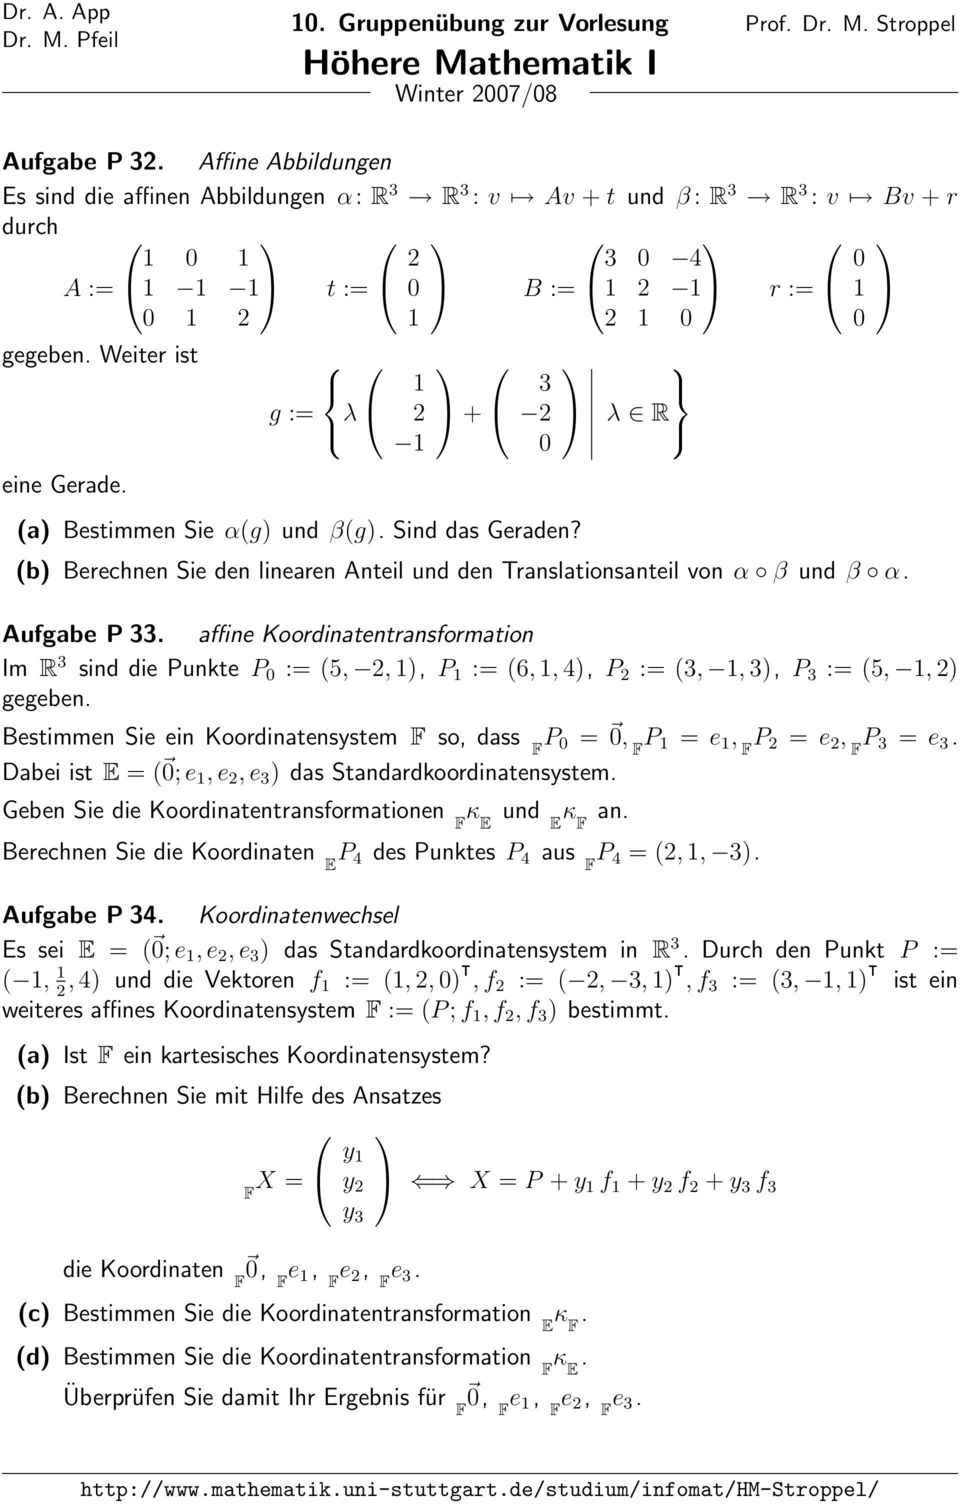 g := λ + 3 (a) Bestimmen Sie α(g) und β(g). Sind das Geraden? λ R (b) Berechnen Sie den linearen Anteil und den Translationsanteil von α β und β α. Aufgabe P 33.